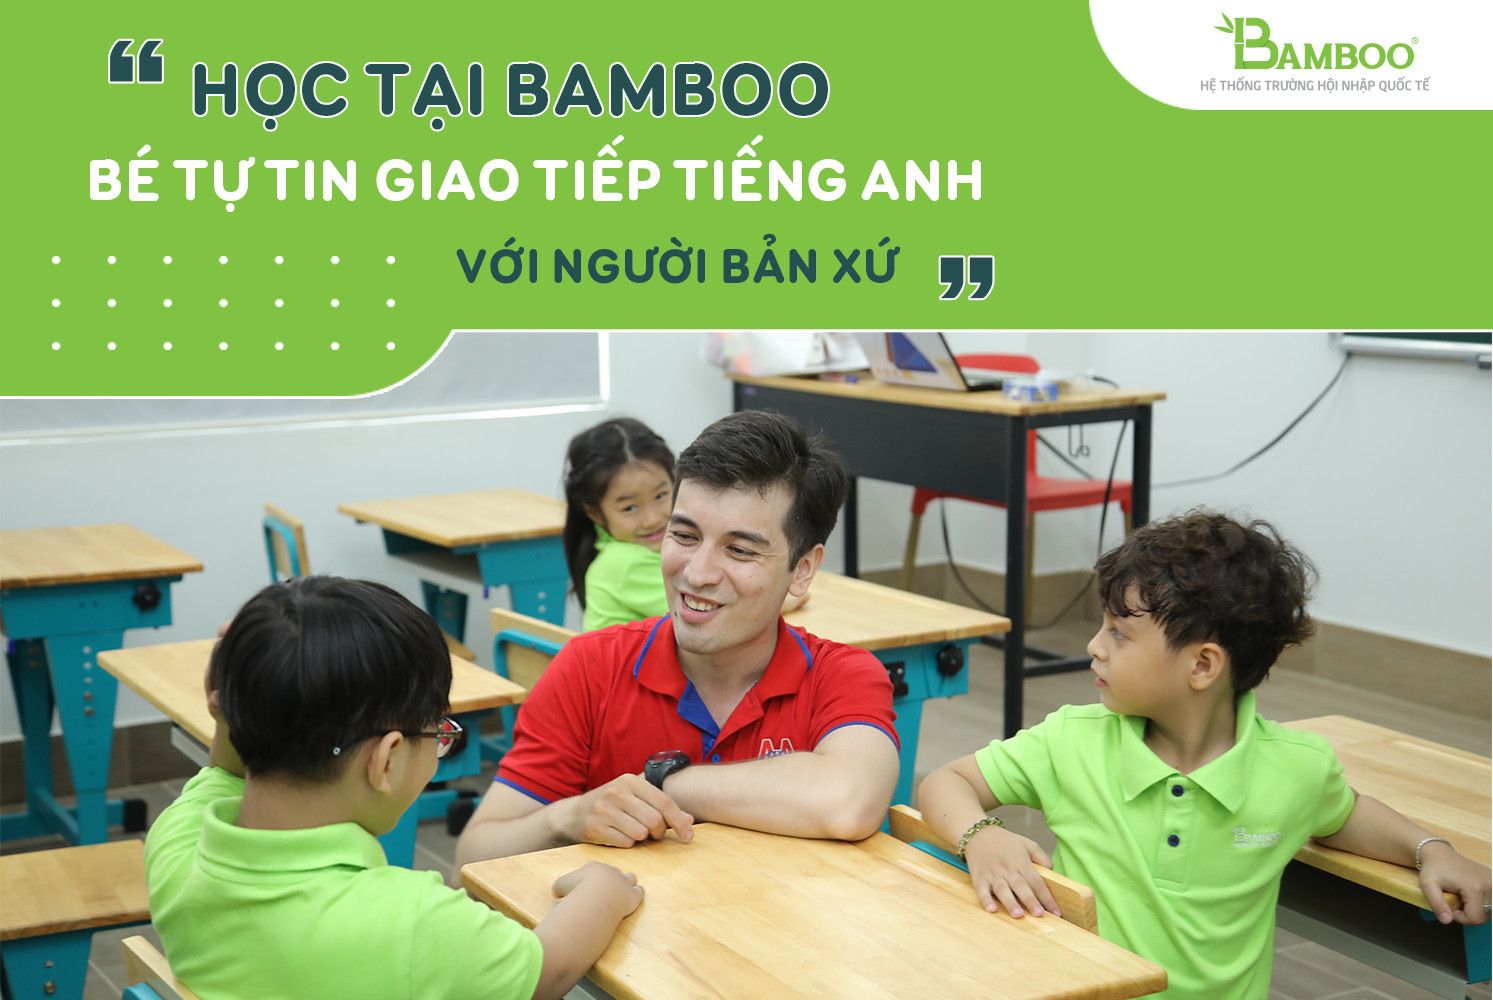 Chương trình Tiếng Anh Cambridge dành cho bậc tiểu học tại Bamboo School có gì đặc biệt? Liệu bạn có biết không?